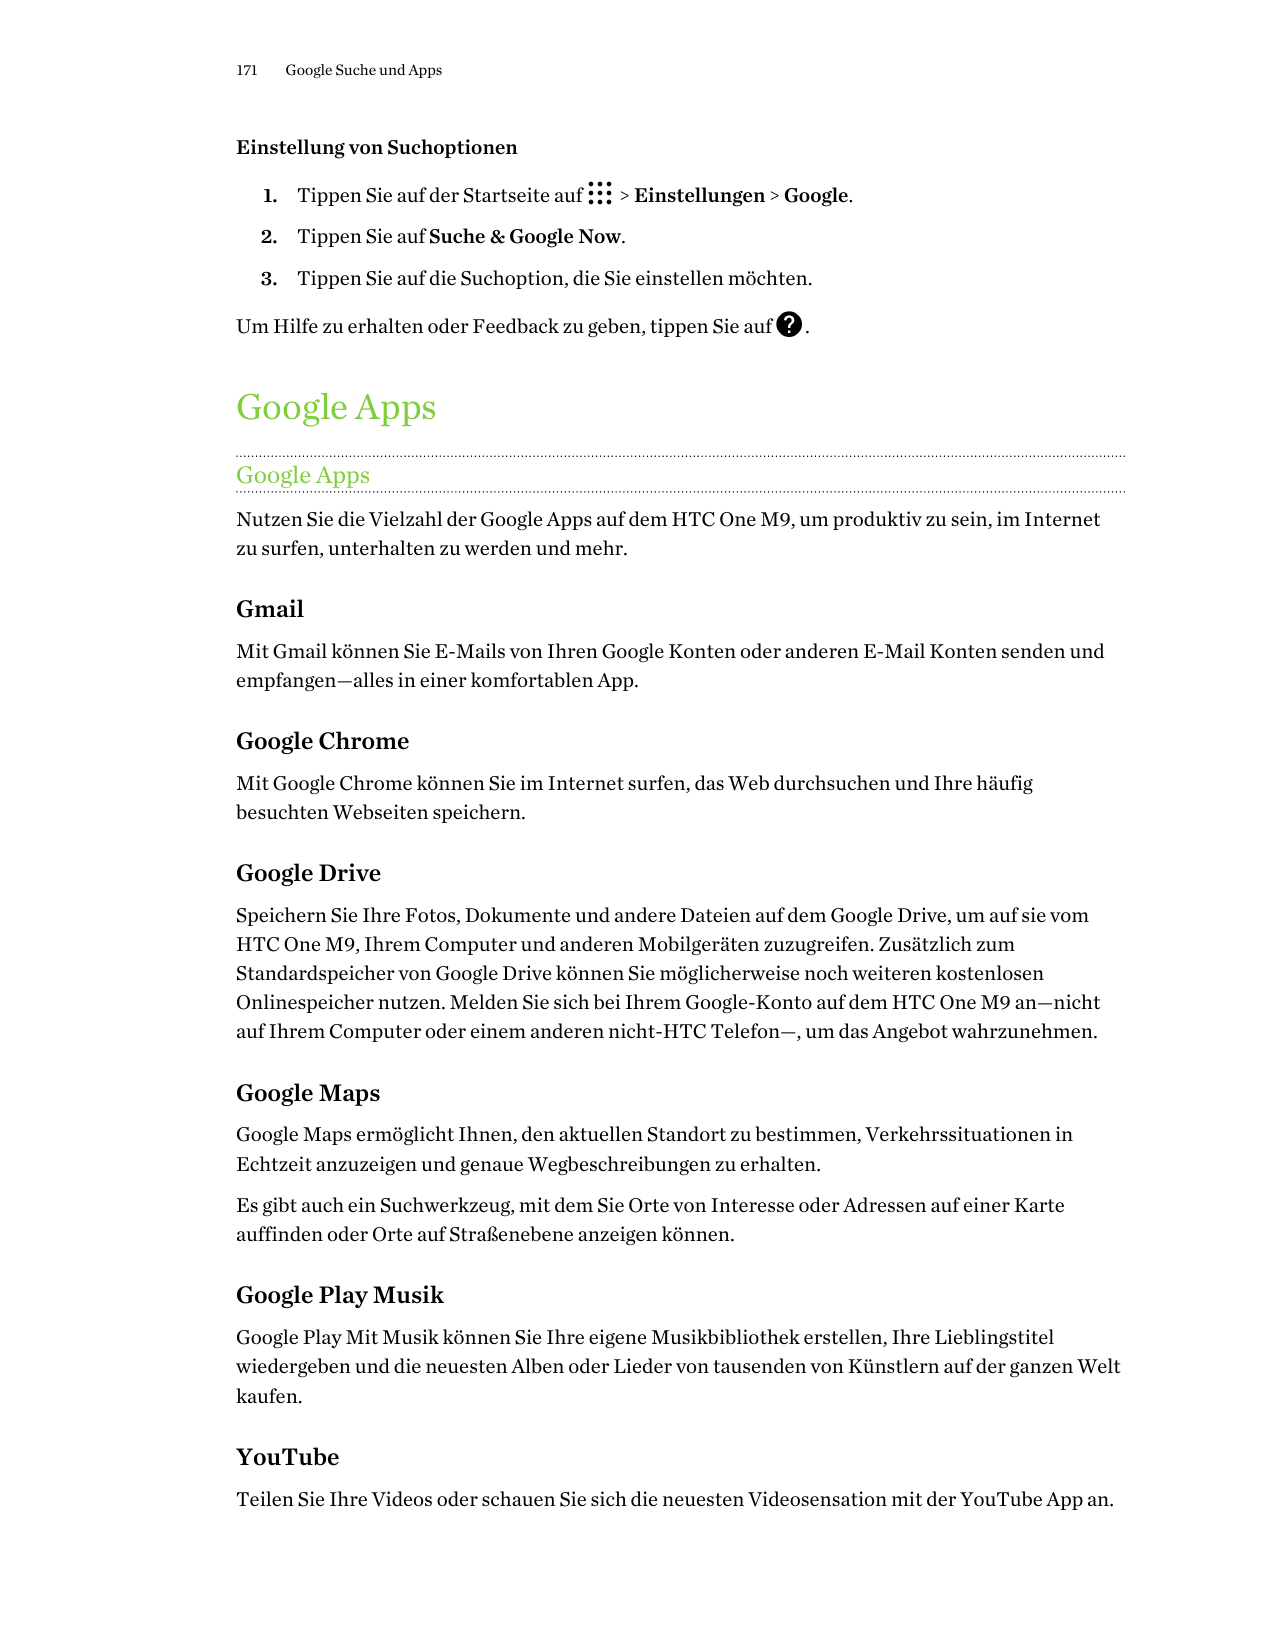 171Google Suche und AppsEinstellung von Suchoptionen1. Tippen Sie auf der Startseite auf> Einstellungen > Google.2. Tippen Sie a